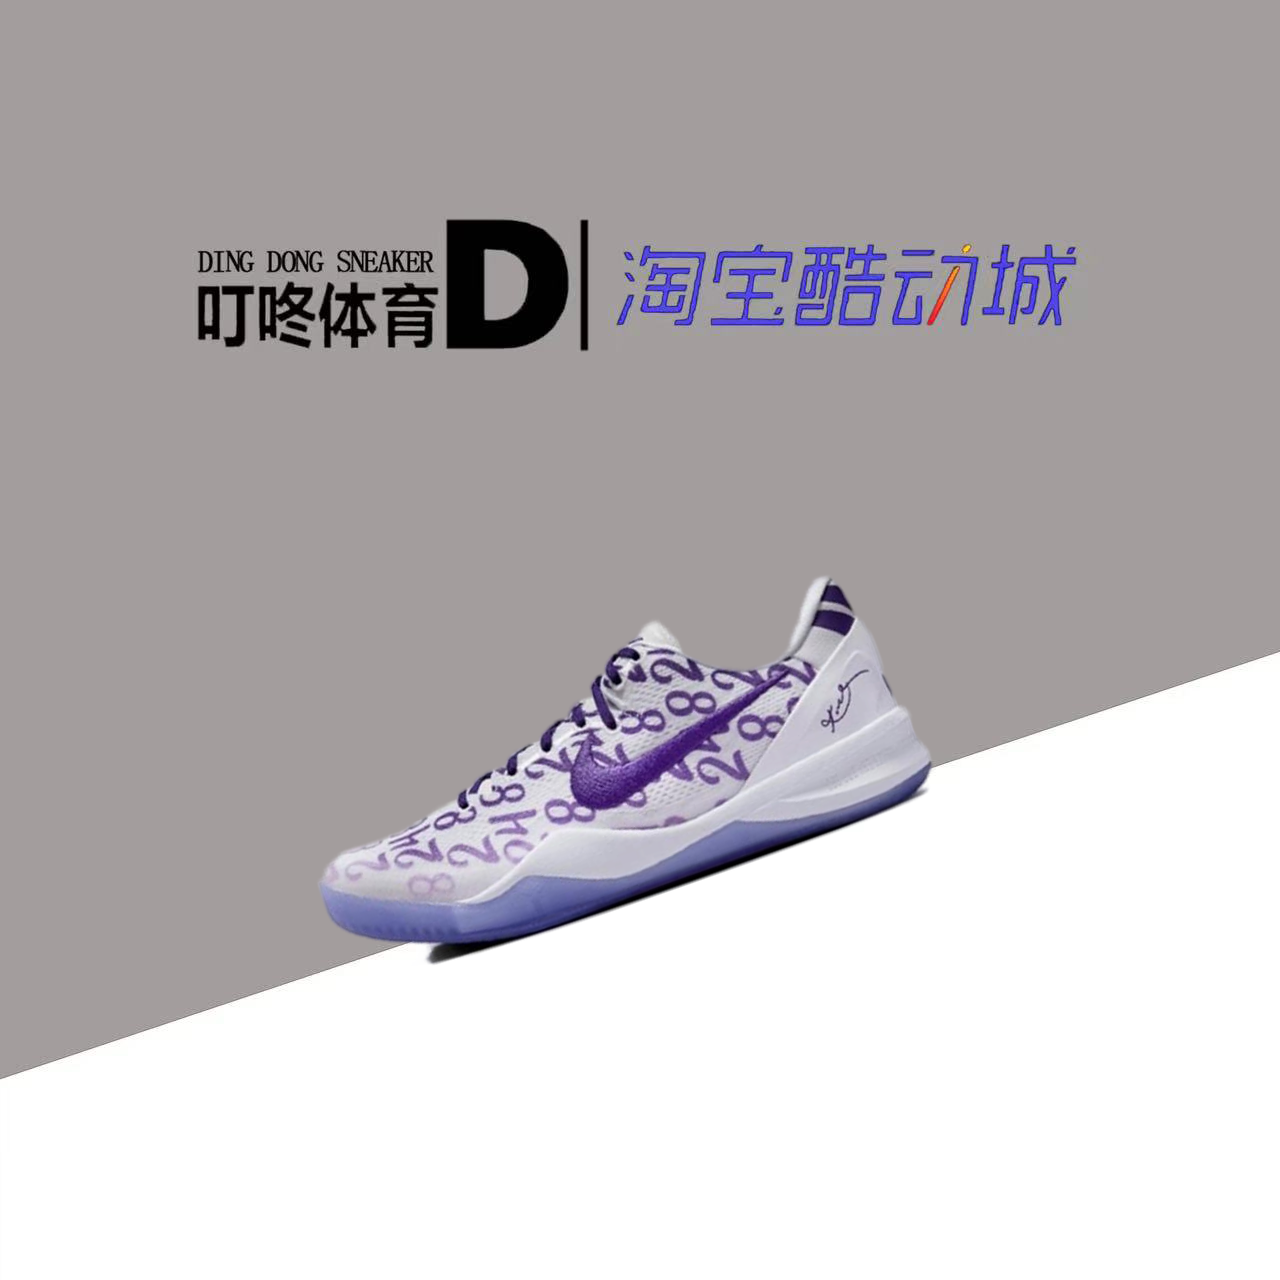 叮咚体育Nike Kobe 8 ZK8 科比8 白紫 低帮实战篮球鞋FQ3549-100